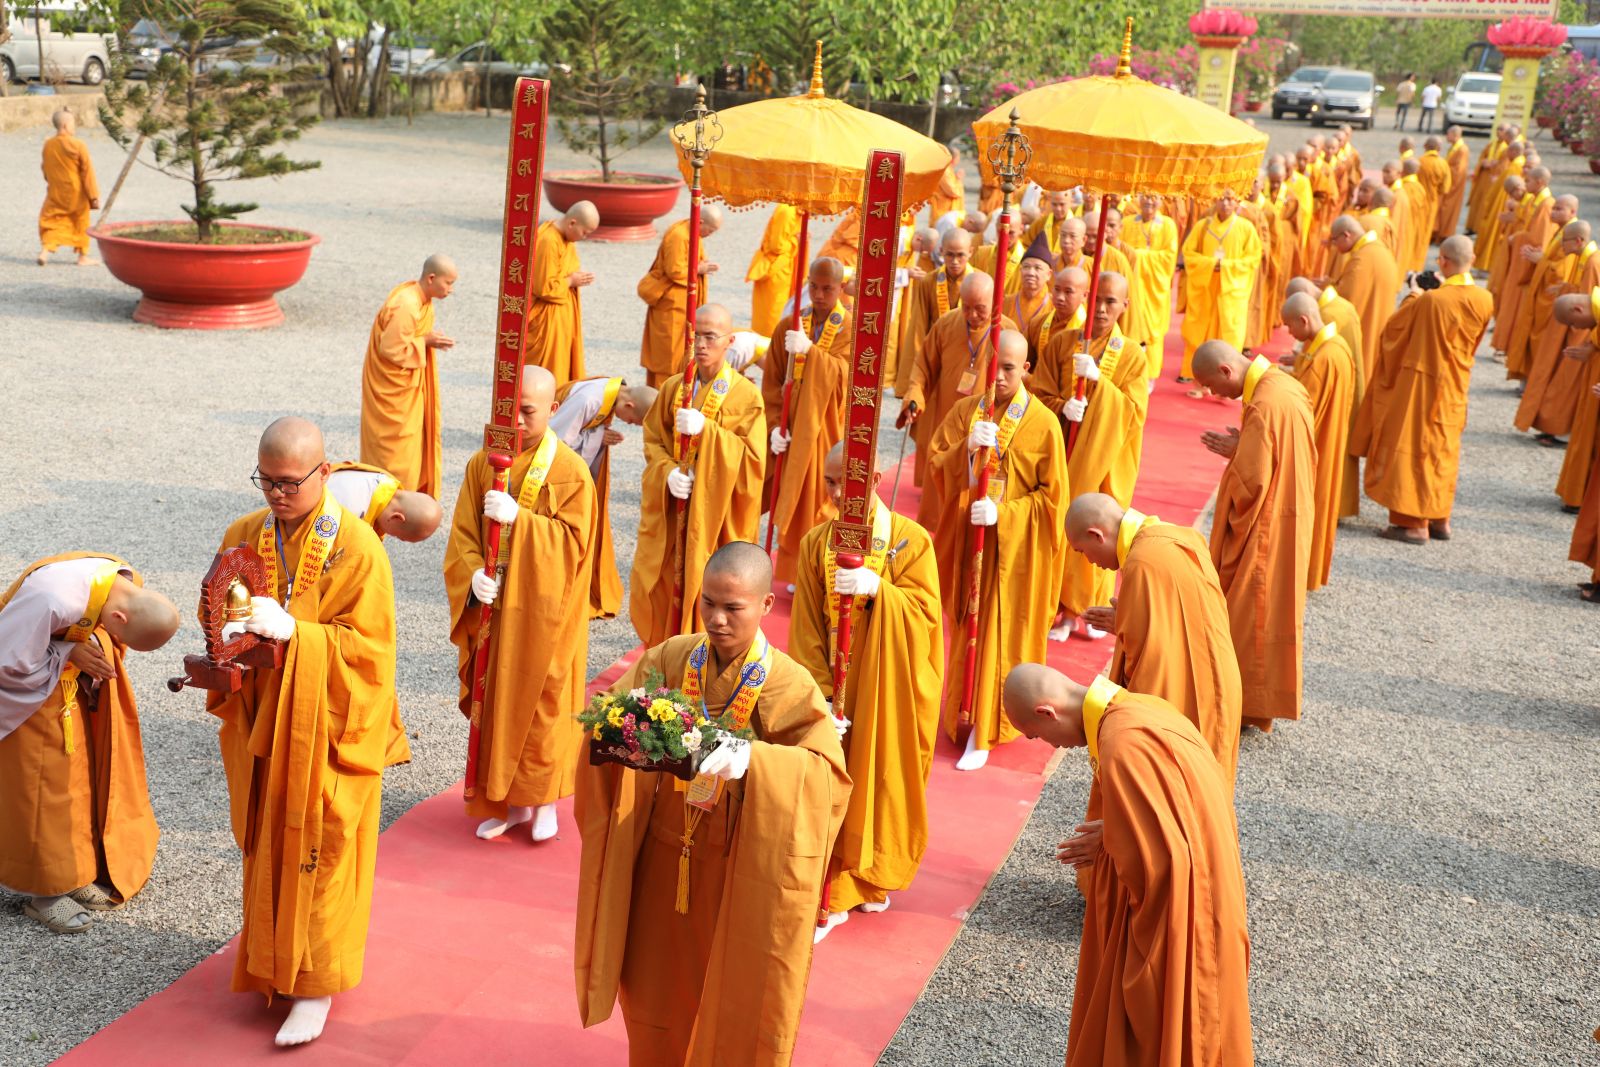 Đồng Nai: Trường Trung cấp Phật học tỉnh Đồng Nai tổ chức lễ Phát Văn Bằng Tốt Nghiệp Khóa IX (2020 - 2023), Giới thiệu Khóa X (2021 - 2024) và Khai giảng Khóa XI (2023 - 2026).